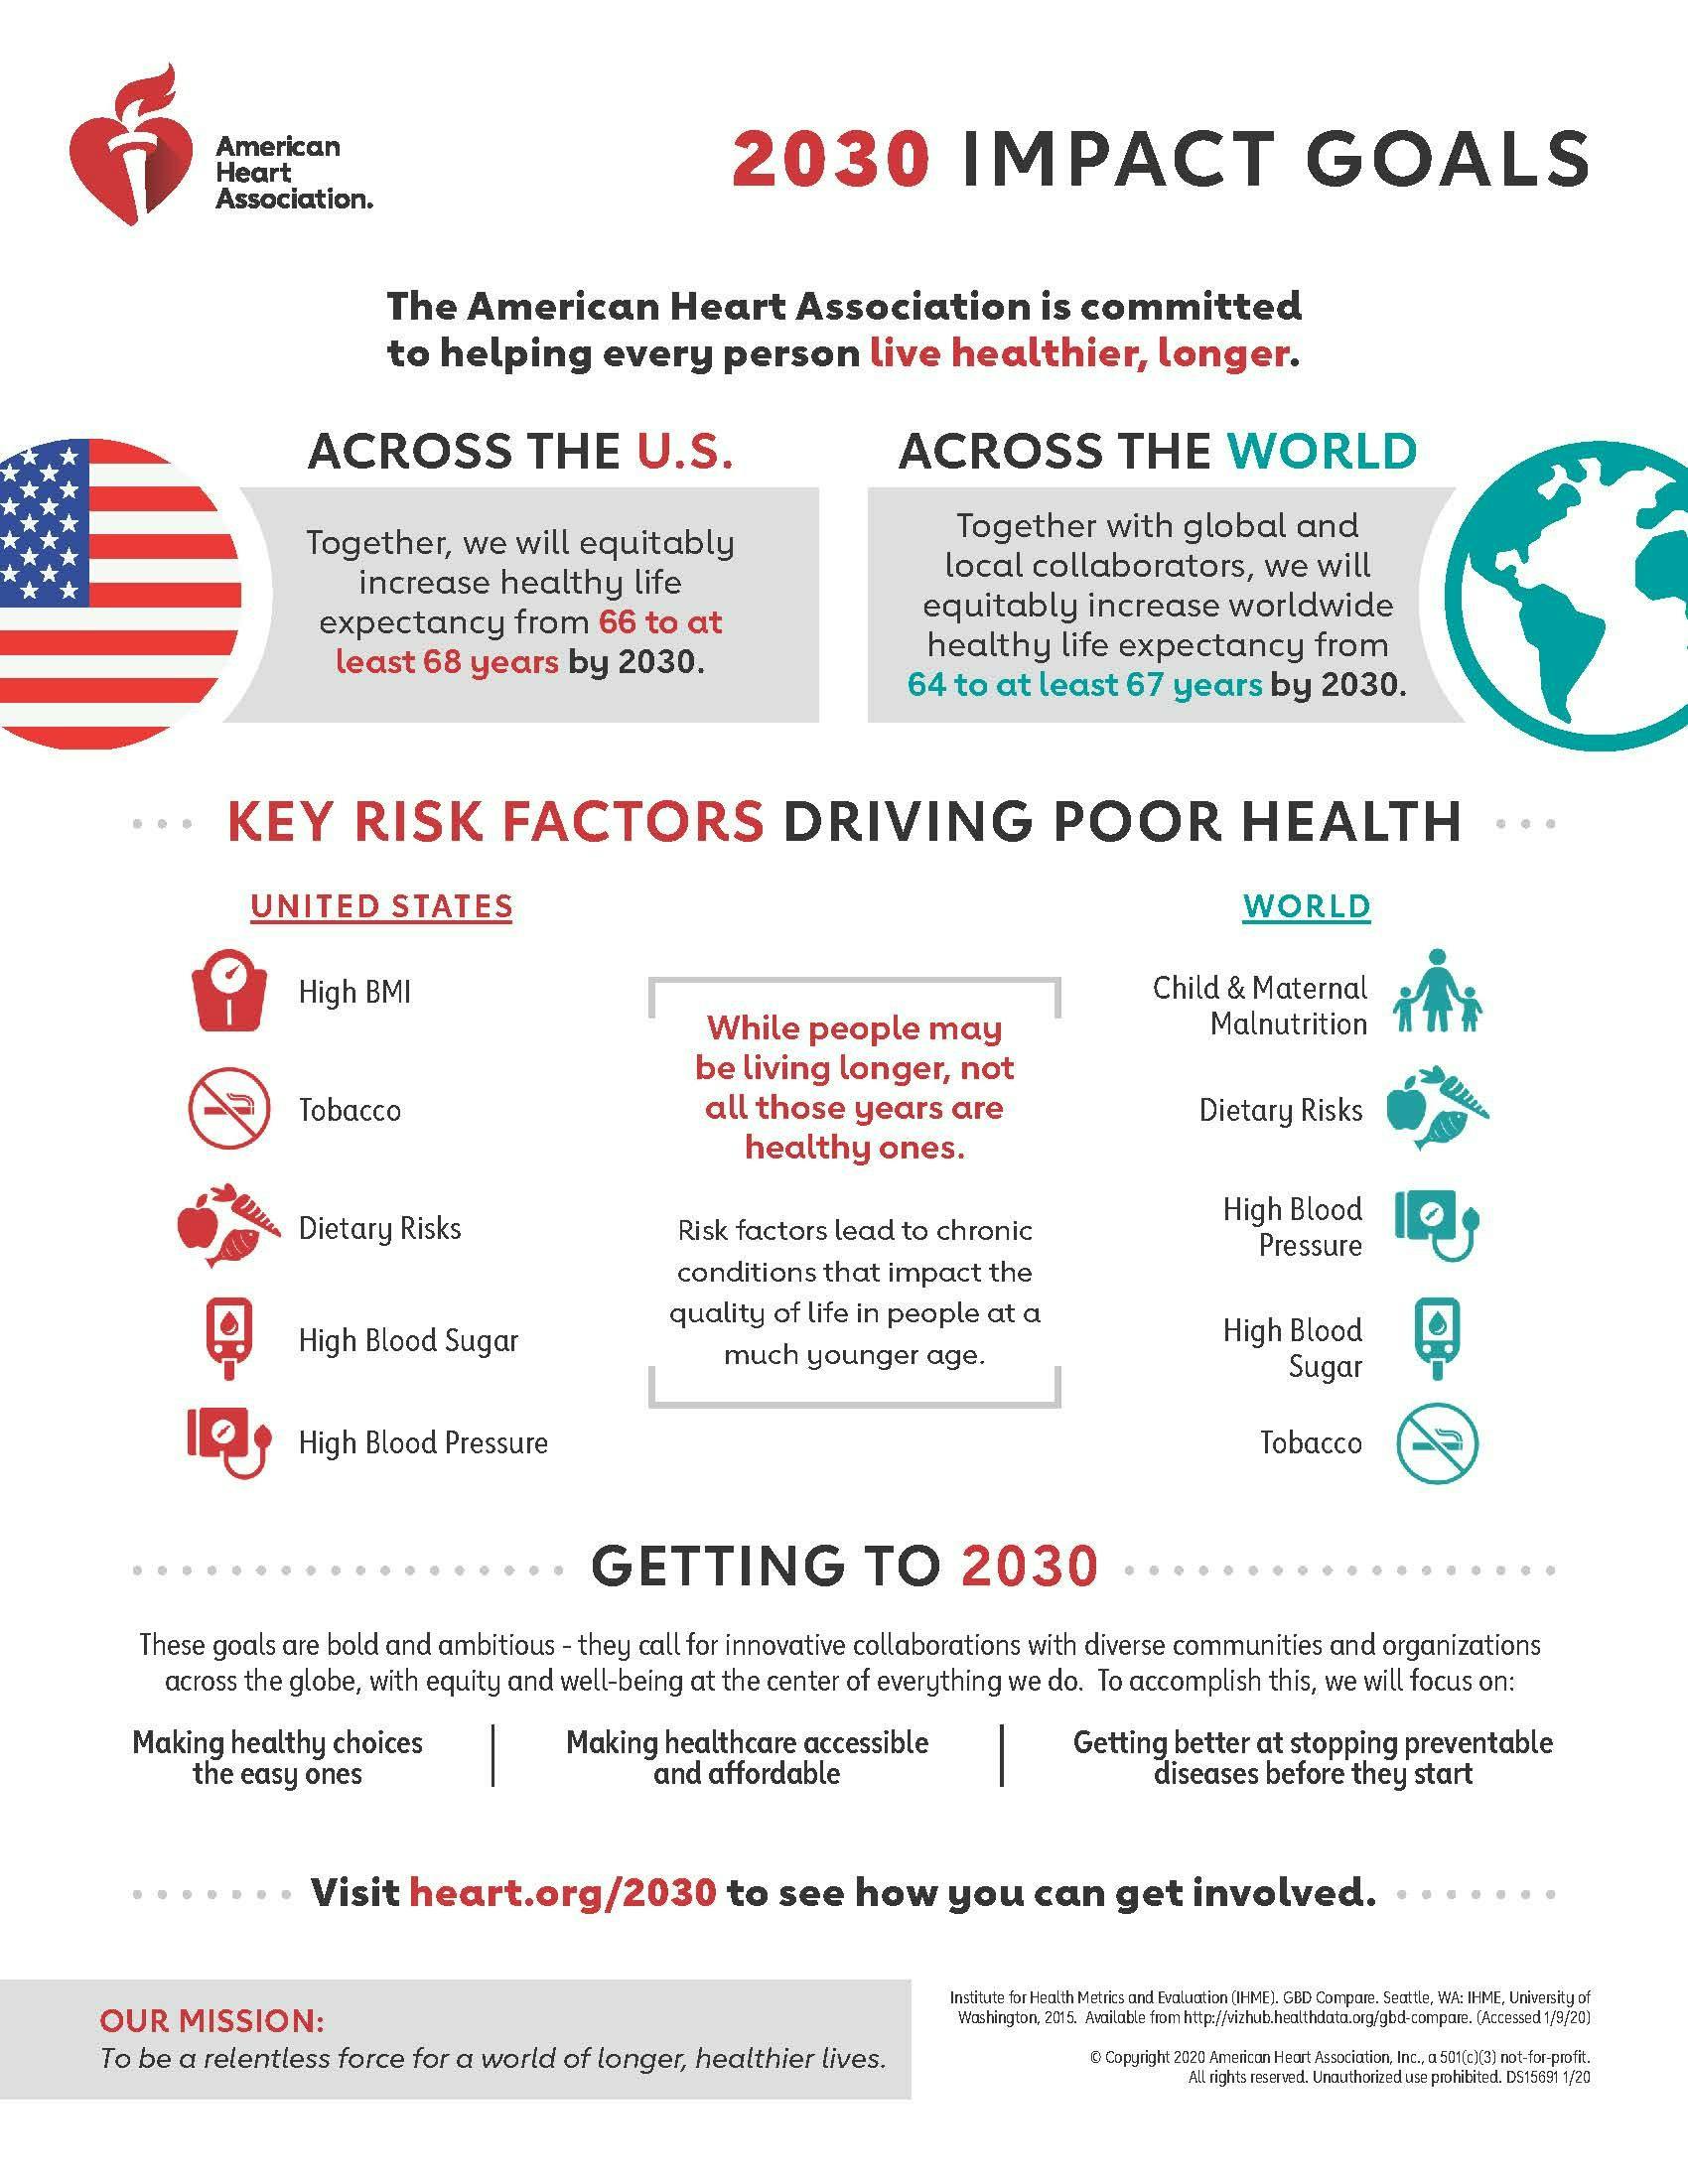 American Heart Association 2030 Impact Goals